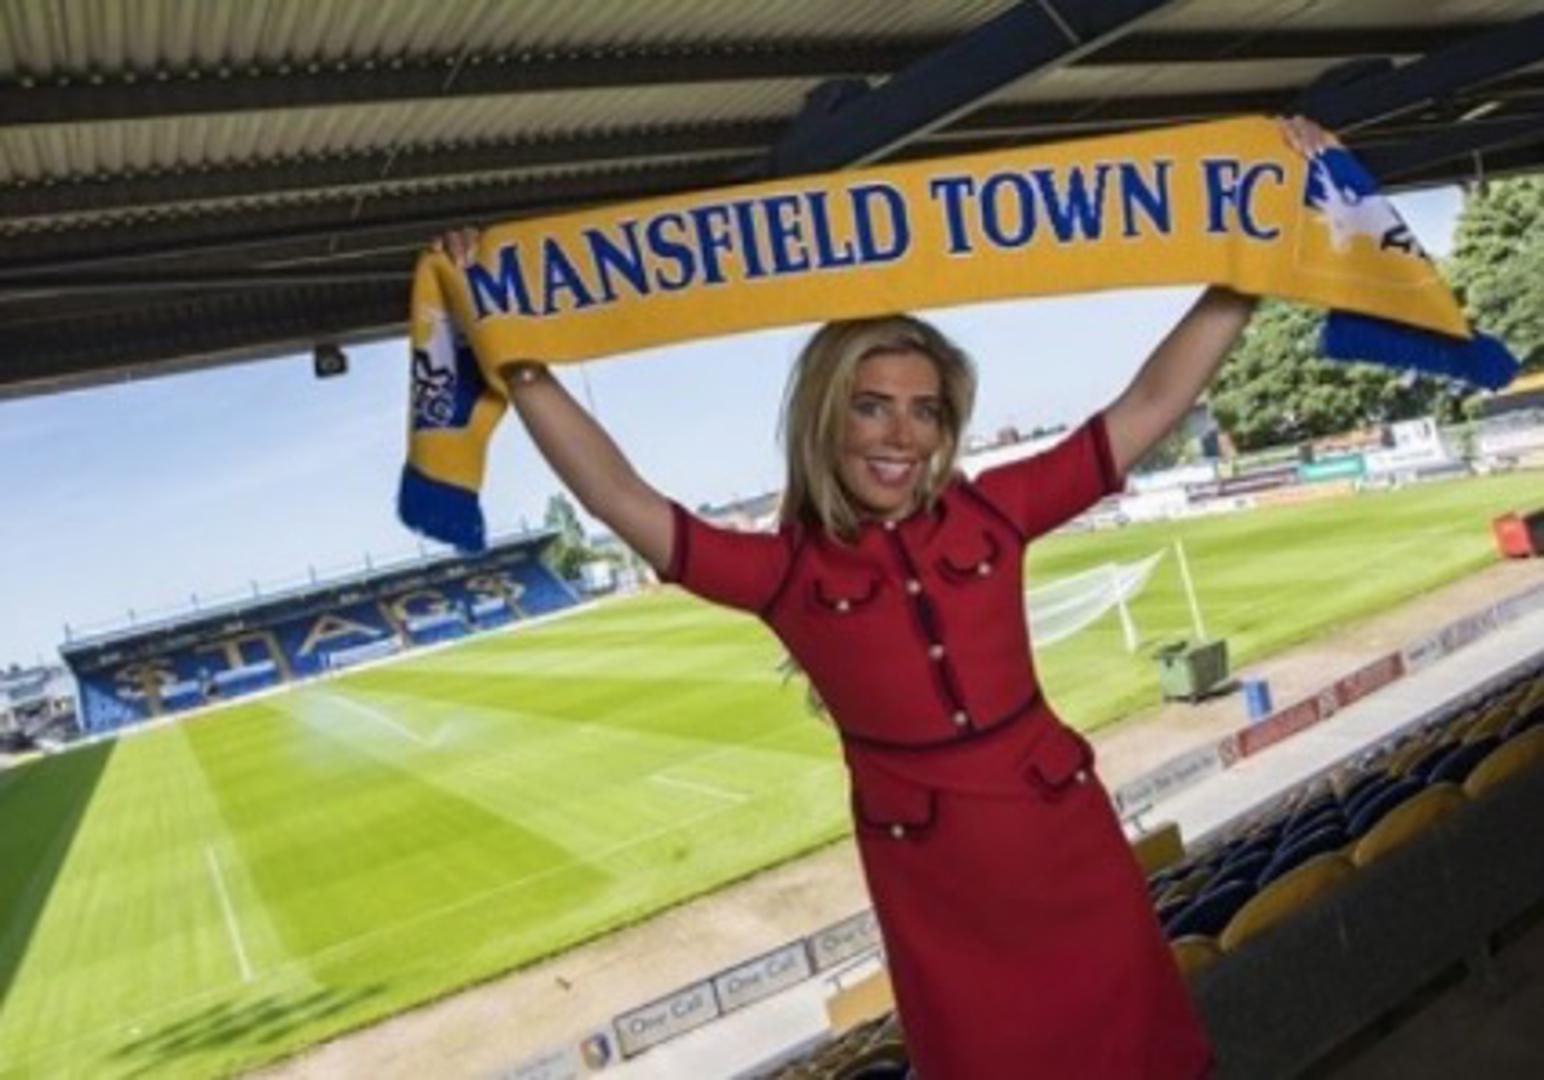 Mansfield Townu se natječe u četvrtoj engleskoj ligi i može se pohvaliti kako na čelu kluba ima lijepu direktoricu Carolyn Radford